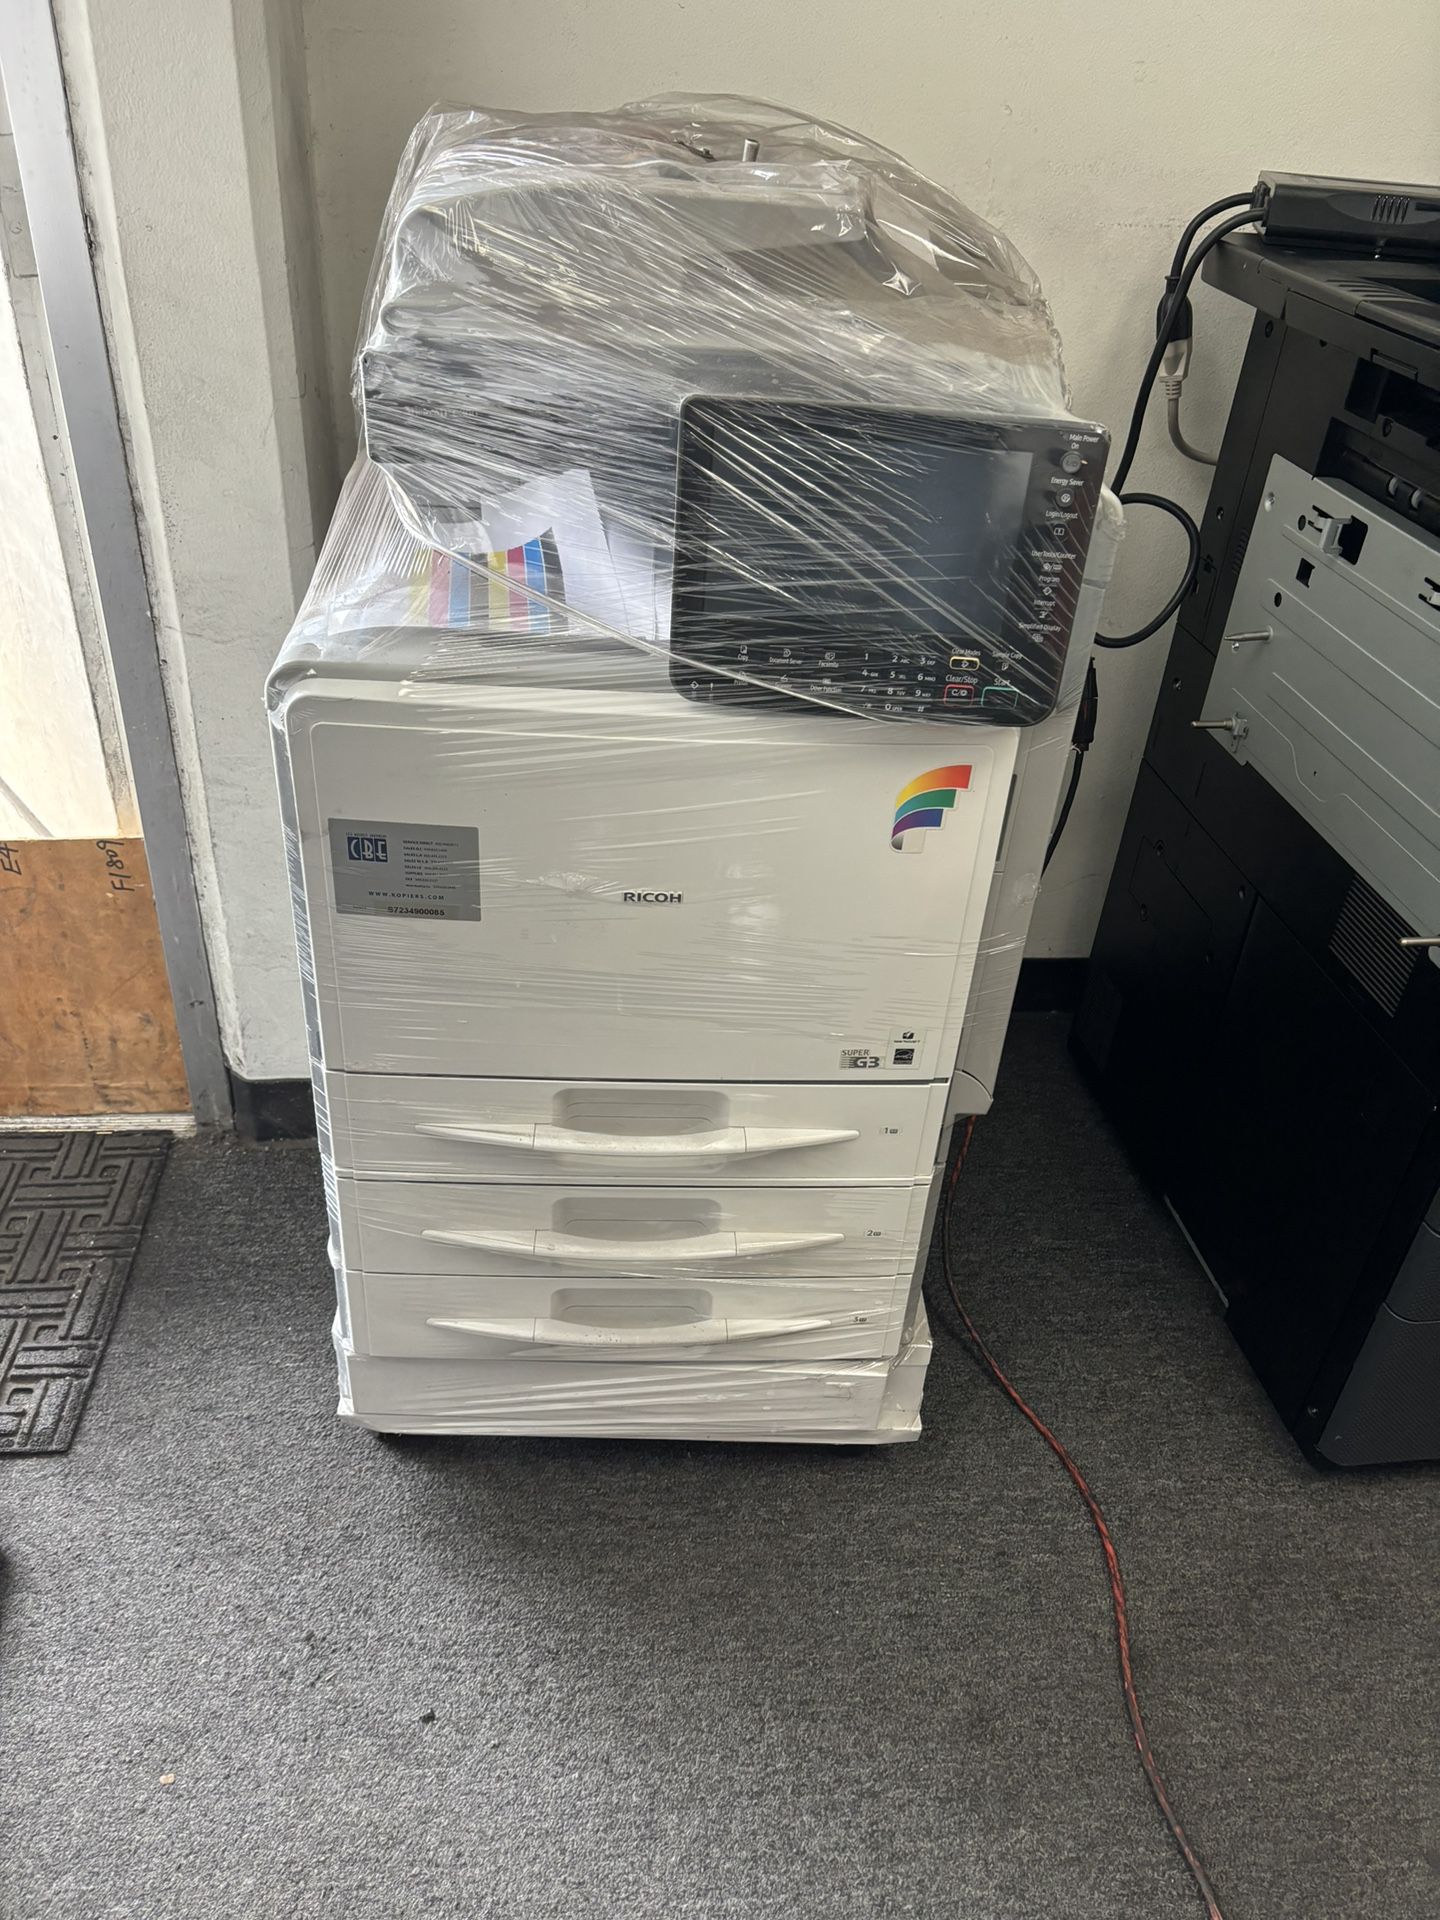 Aficio MP C300 Color Copier/printer/scan